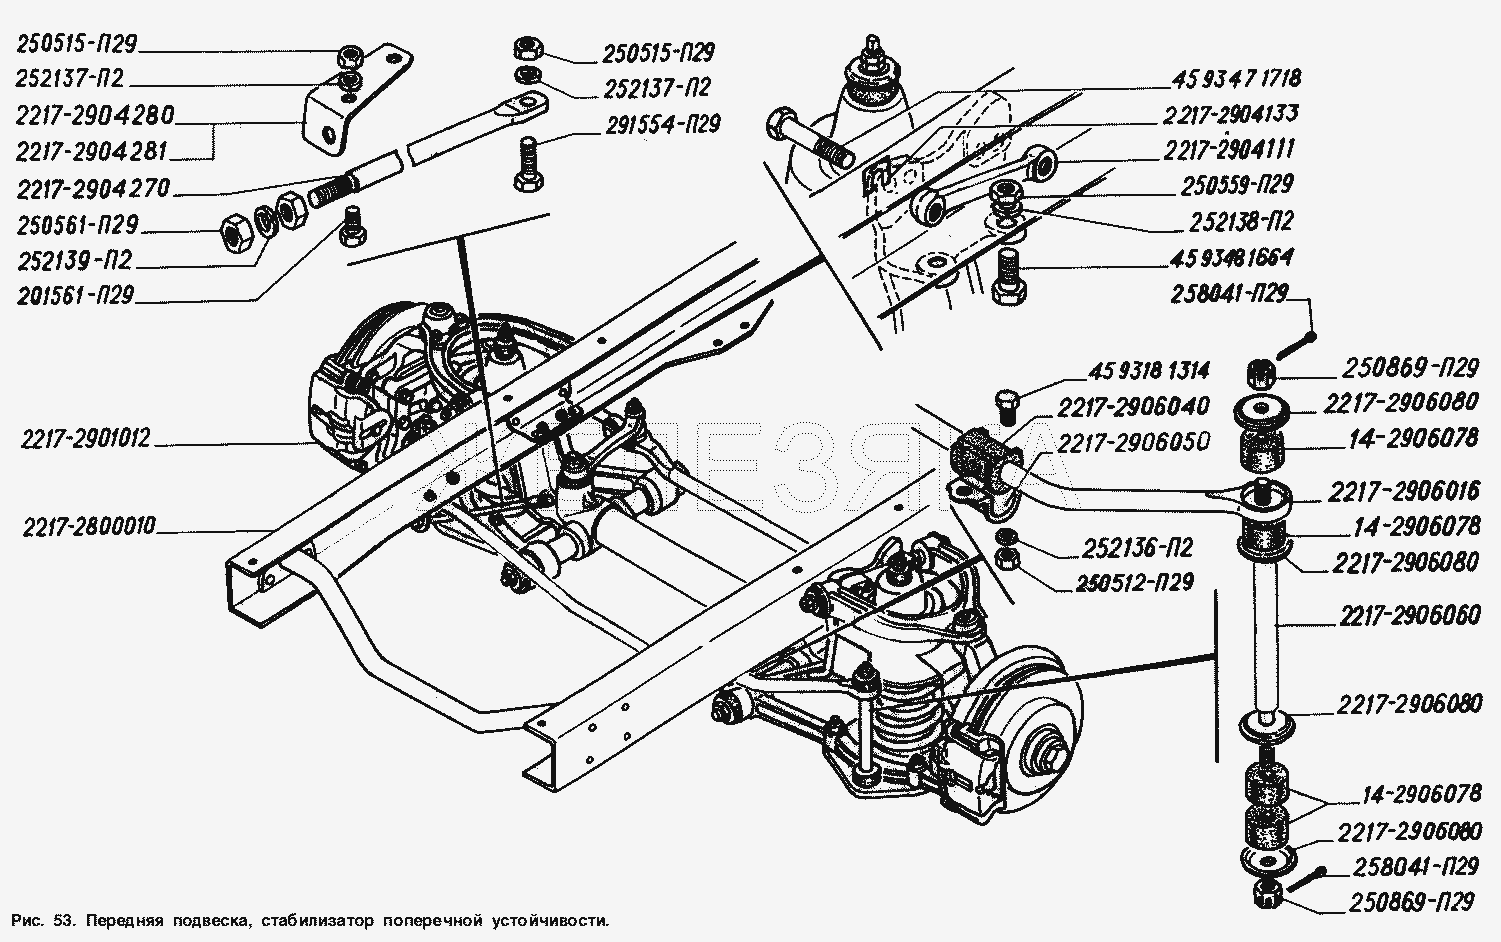 Передняя подвеска, стабилизатор поперечной устойчивости.  ГАЗ-2217 (Соболь)